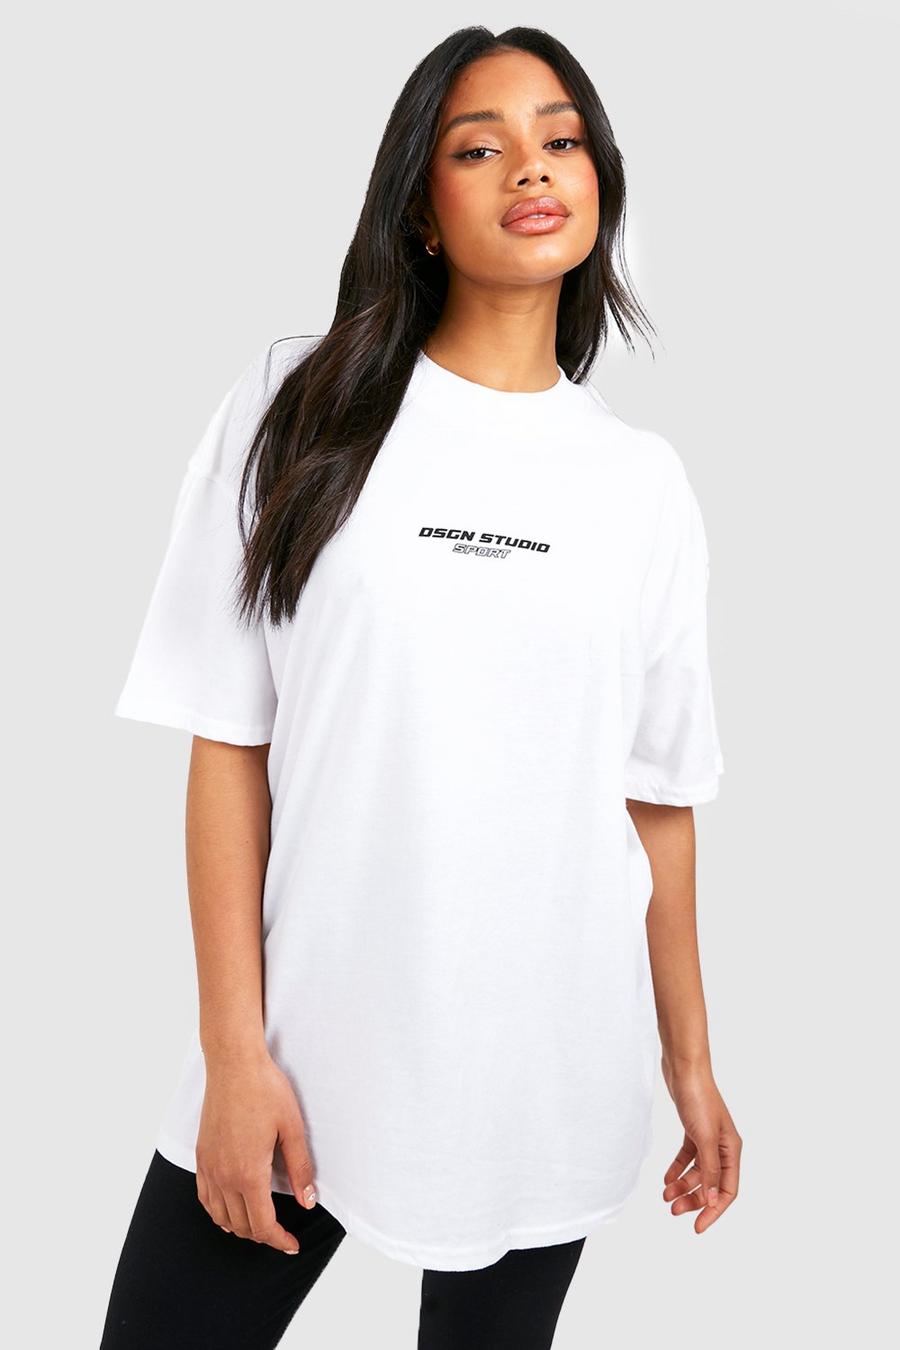 White Oversized Dsgn Studio Sports Fitness T-Shirt